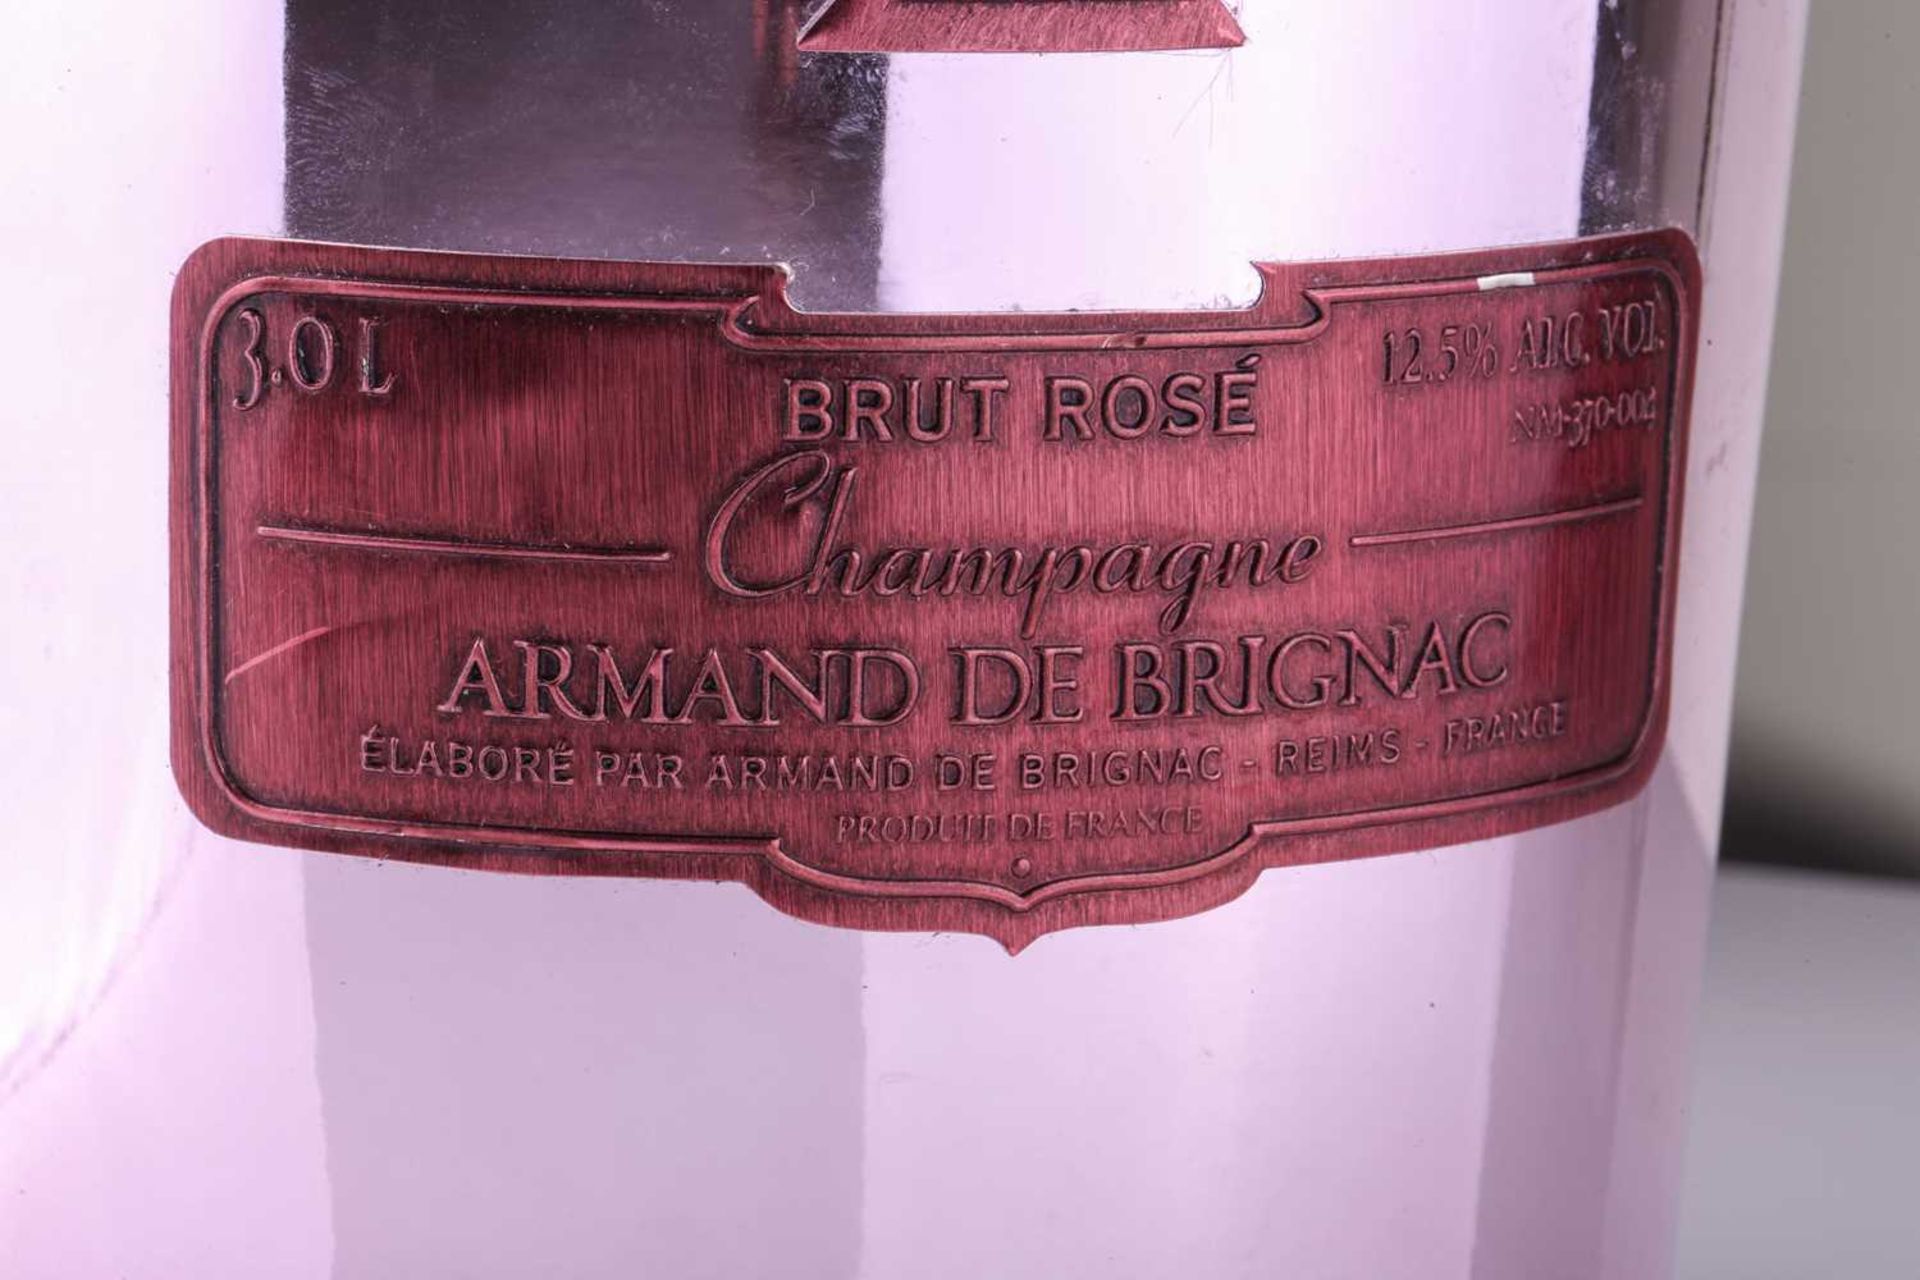 A Jeroboam of Cattier Armand de Brignac Ace of Spades Brut Rose Champagne, 3lt, 12.5%Private - Bild 9 aus 11